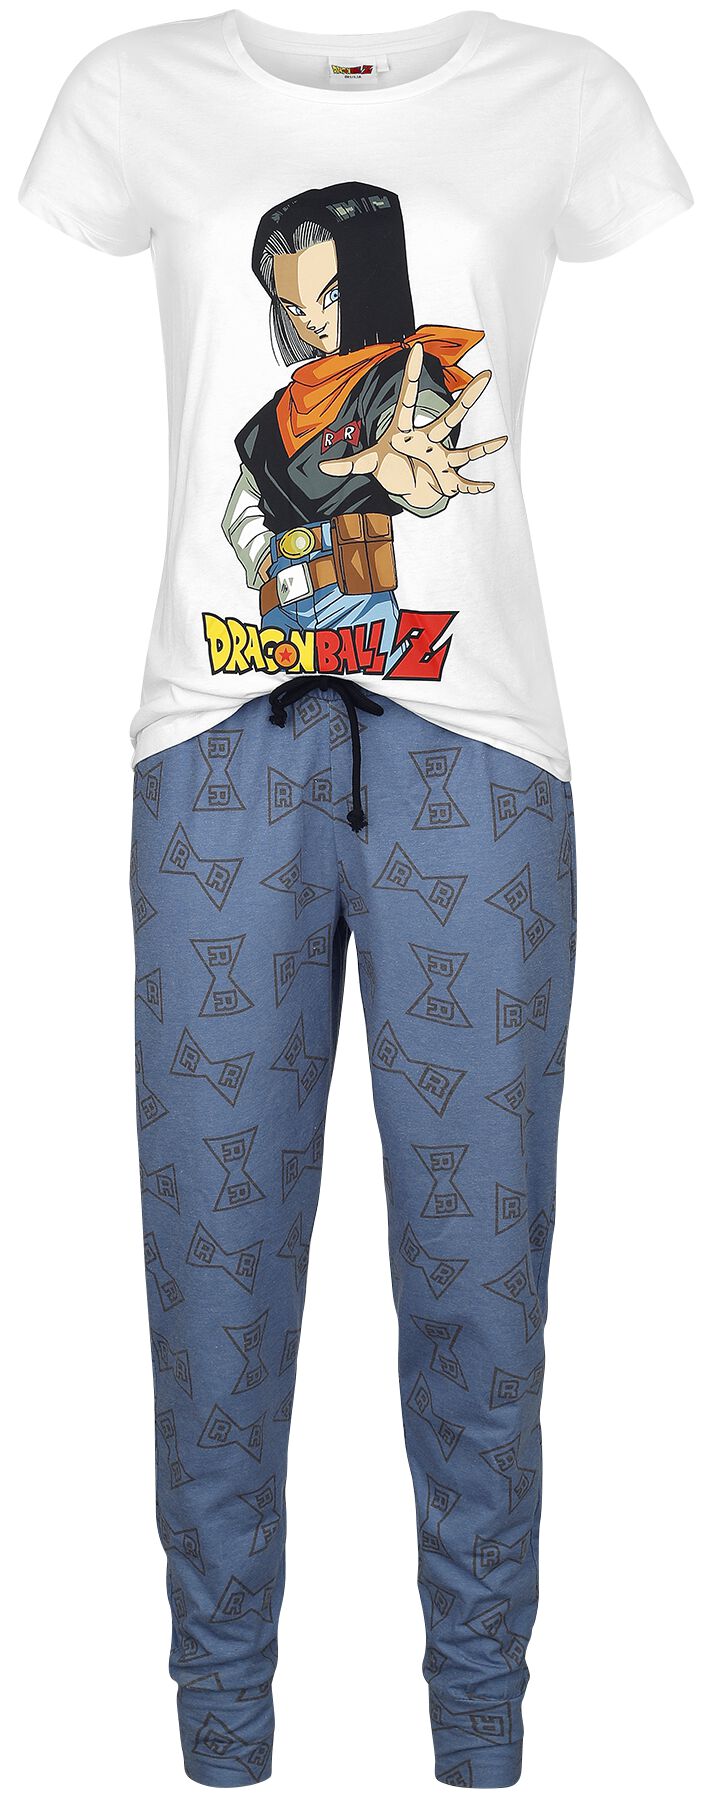 Pantalon de pyjama a Dragon Ball Z pour homme